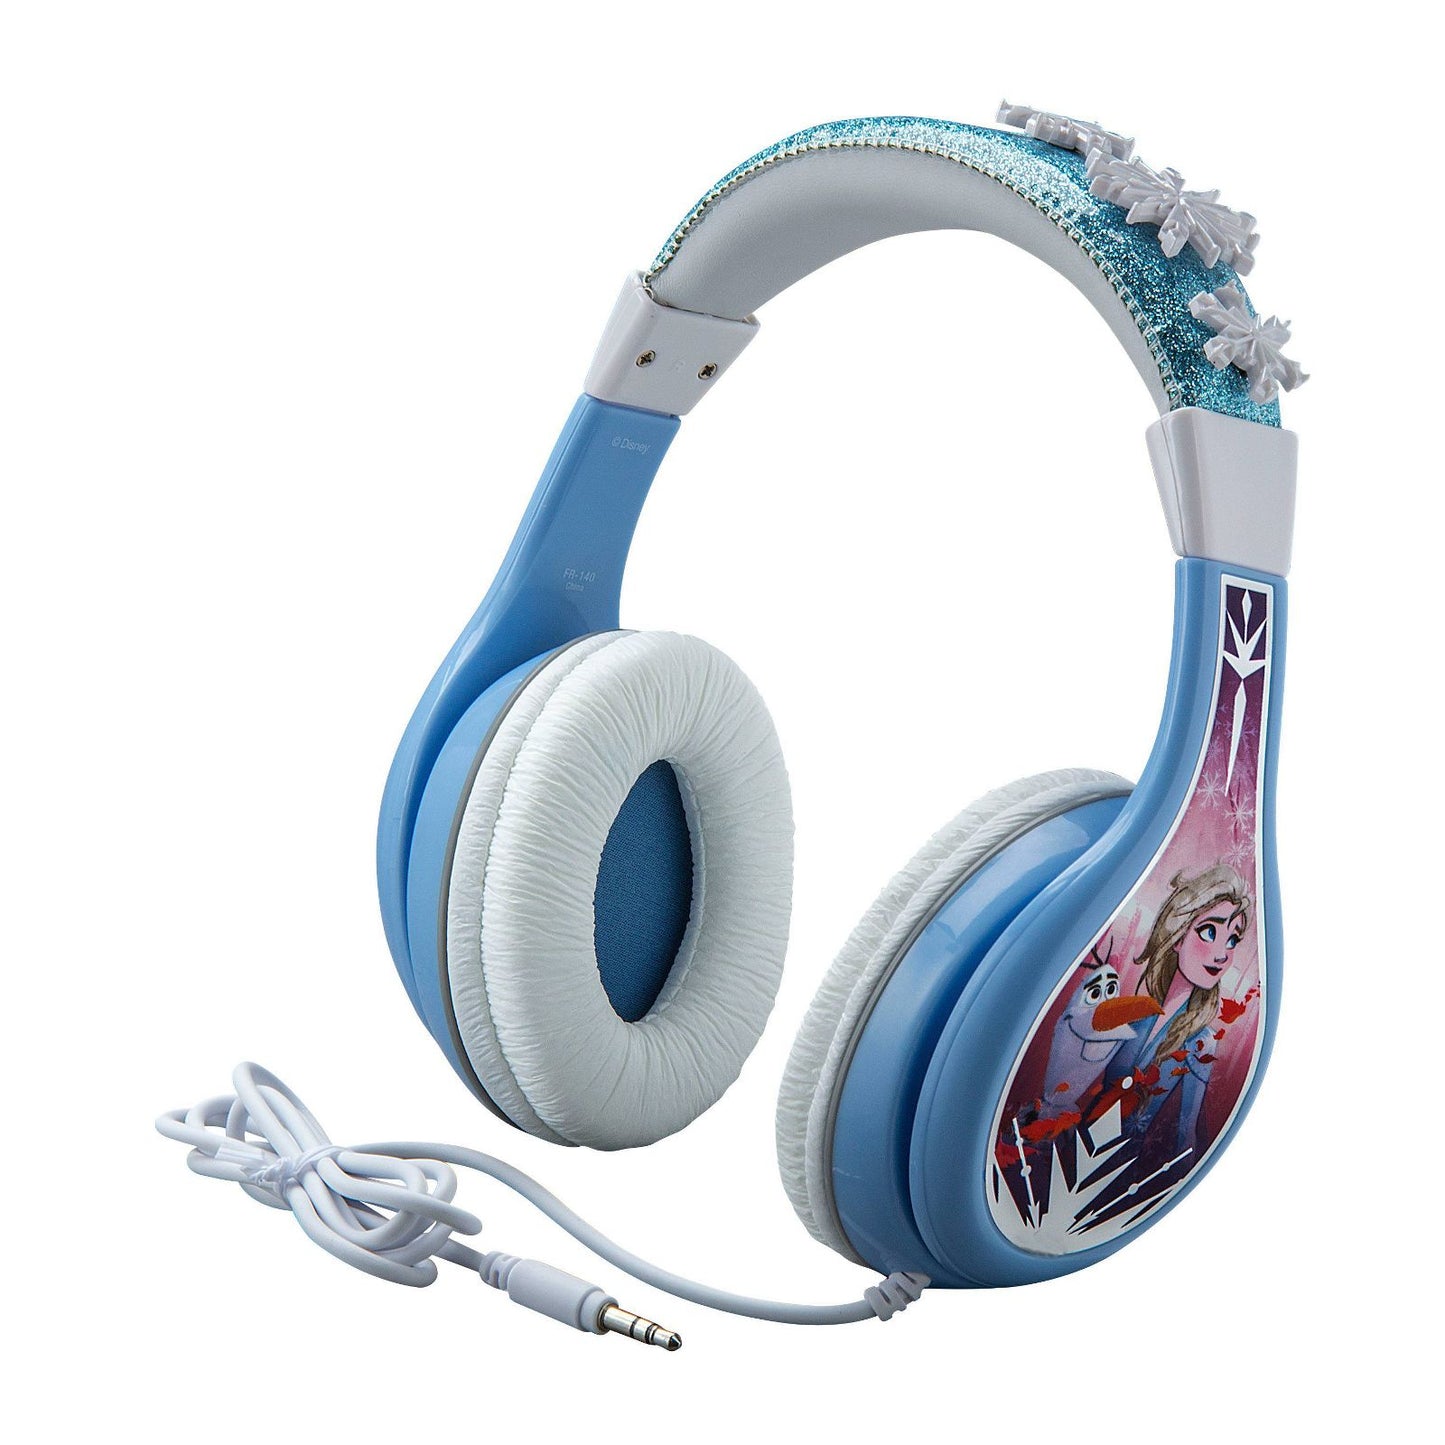 FROZEN2 headphones for kids from DISNEY